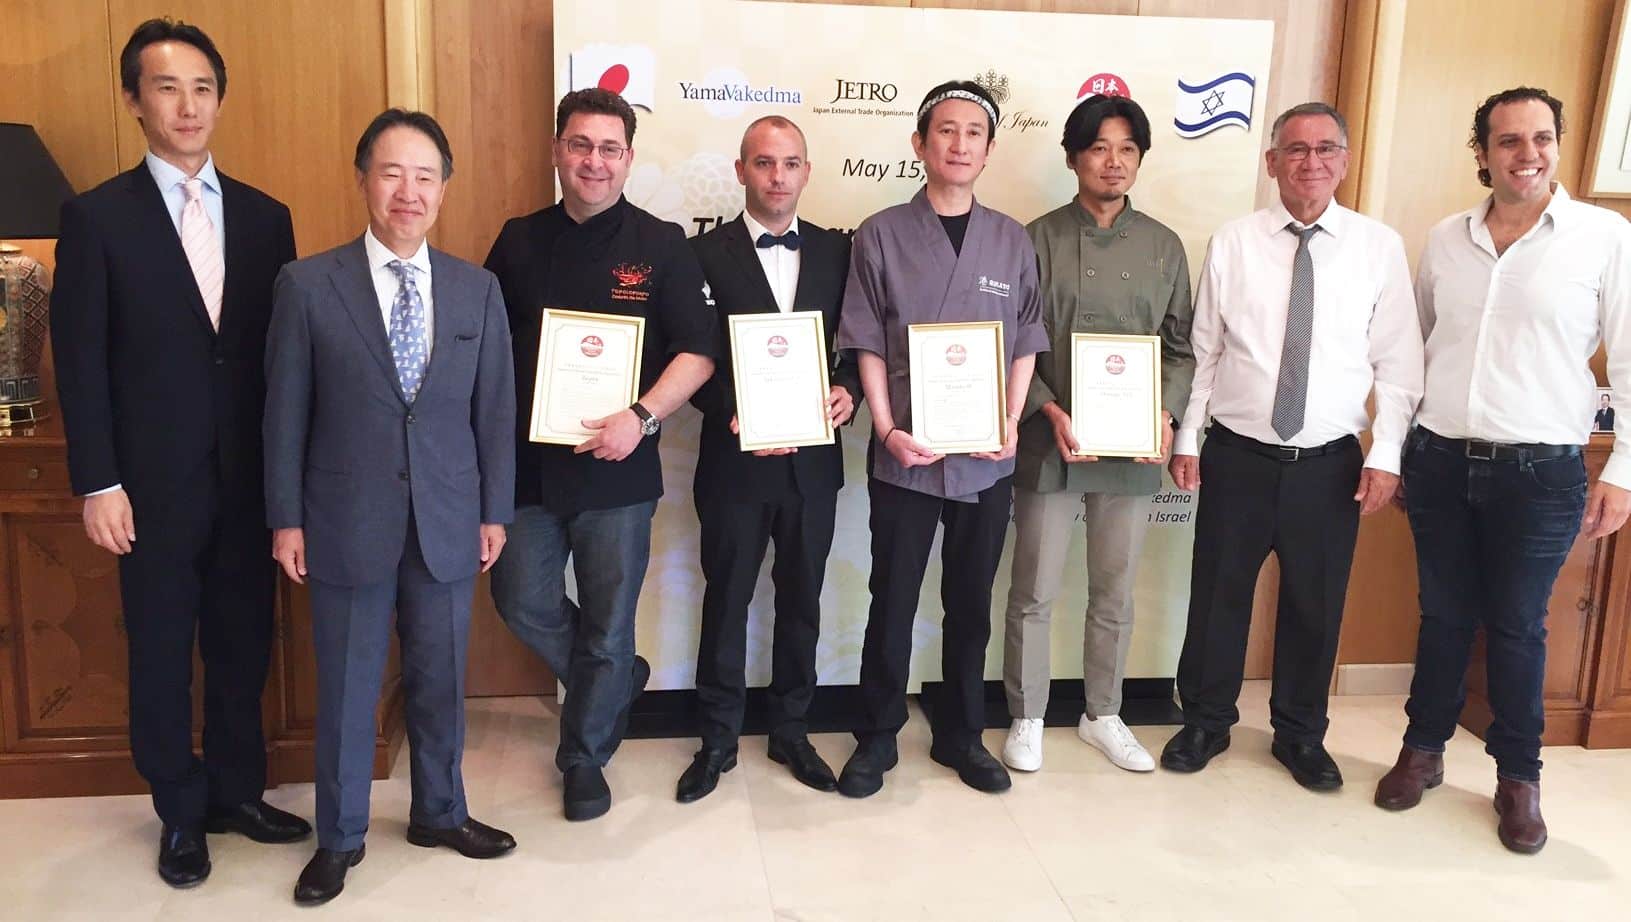 שגריר יפן בישראל, ראש עיריית הרצליה, אנשי המסעדות מקבלות התעודה והגופים המסמיכים